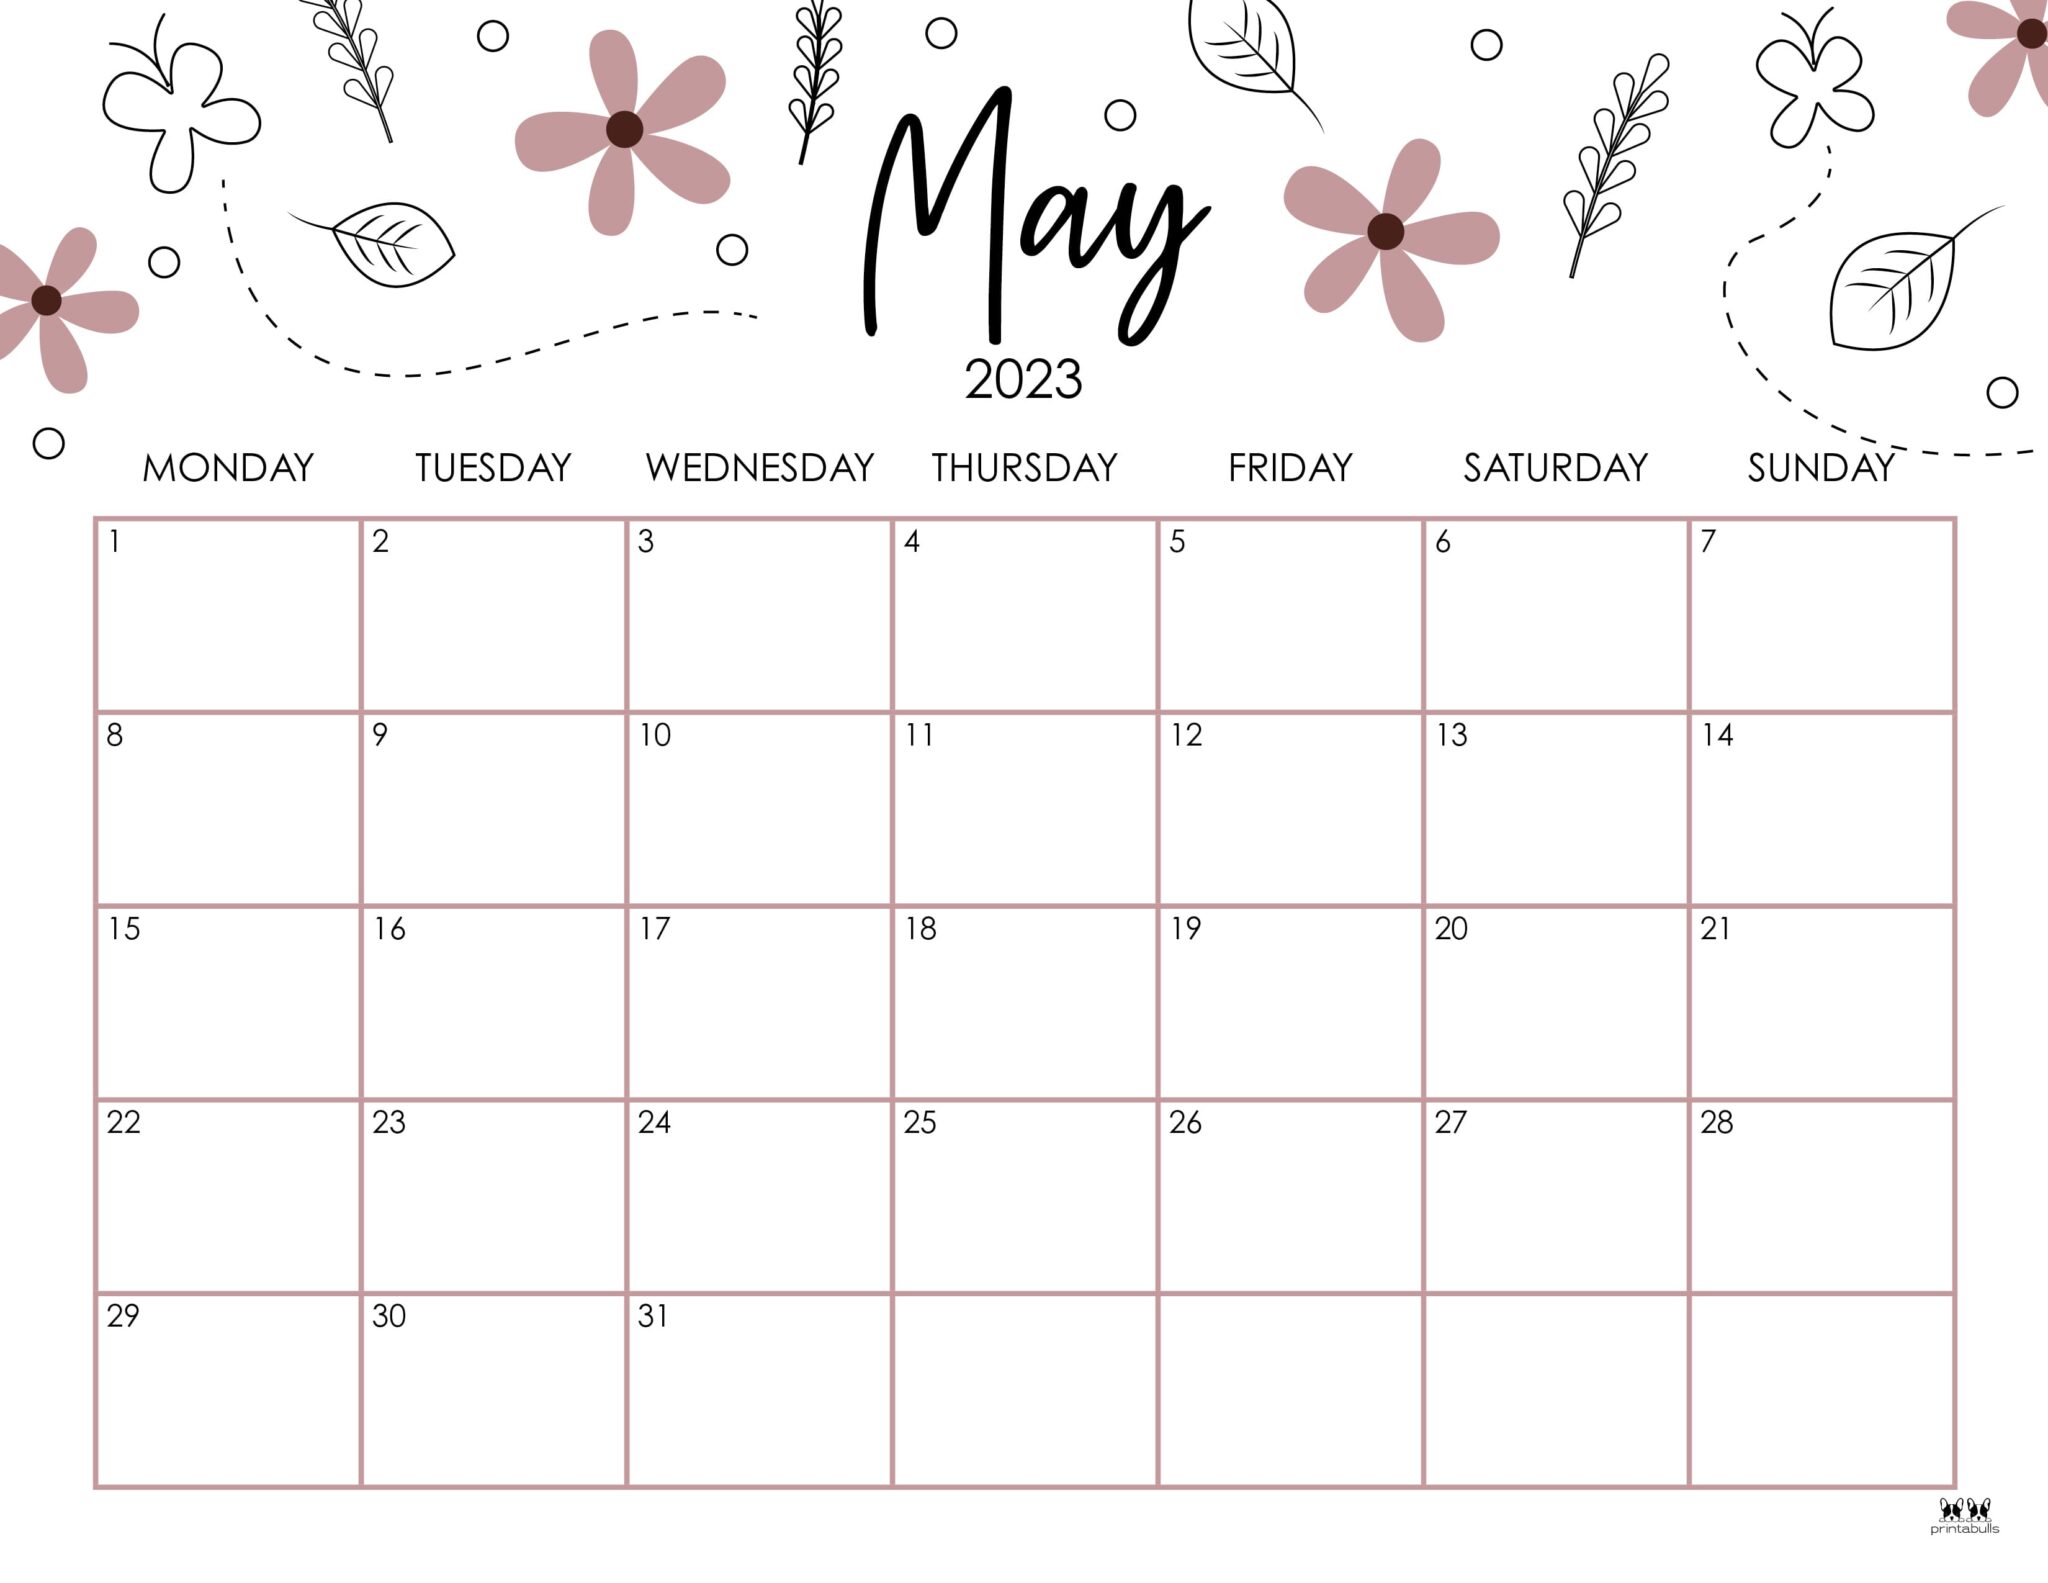 Включи календарь май